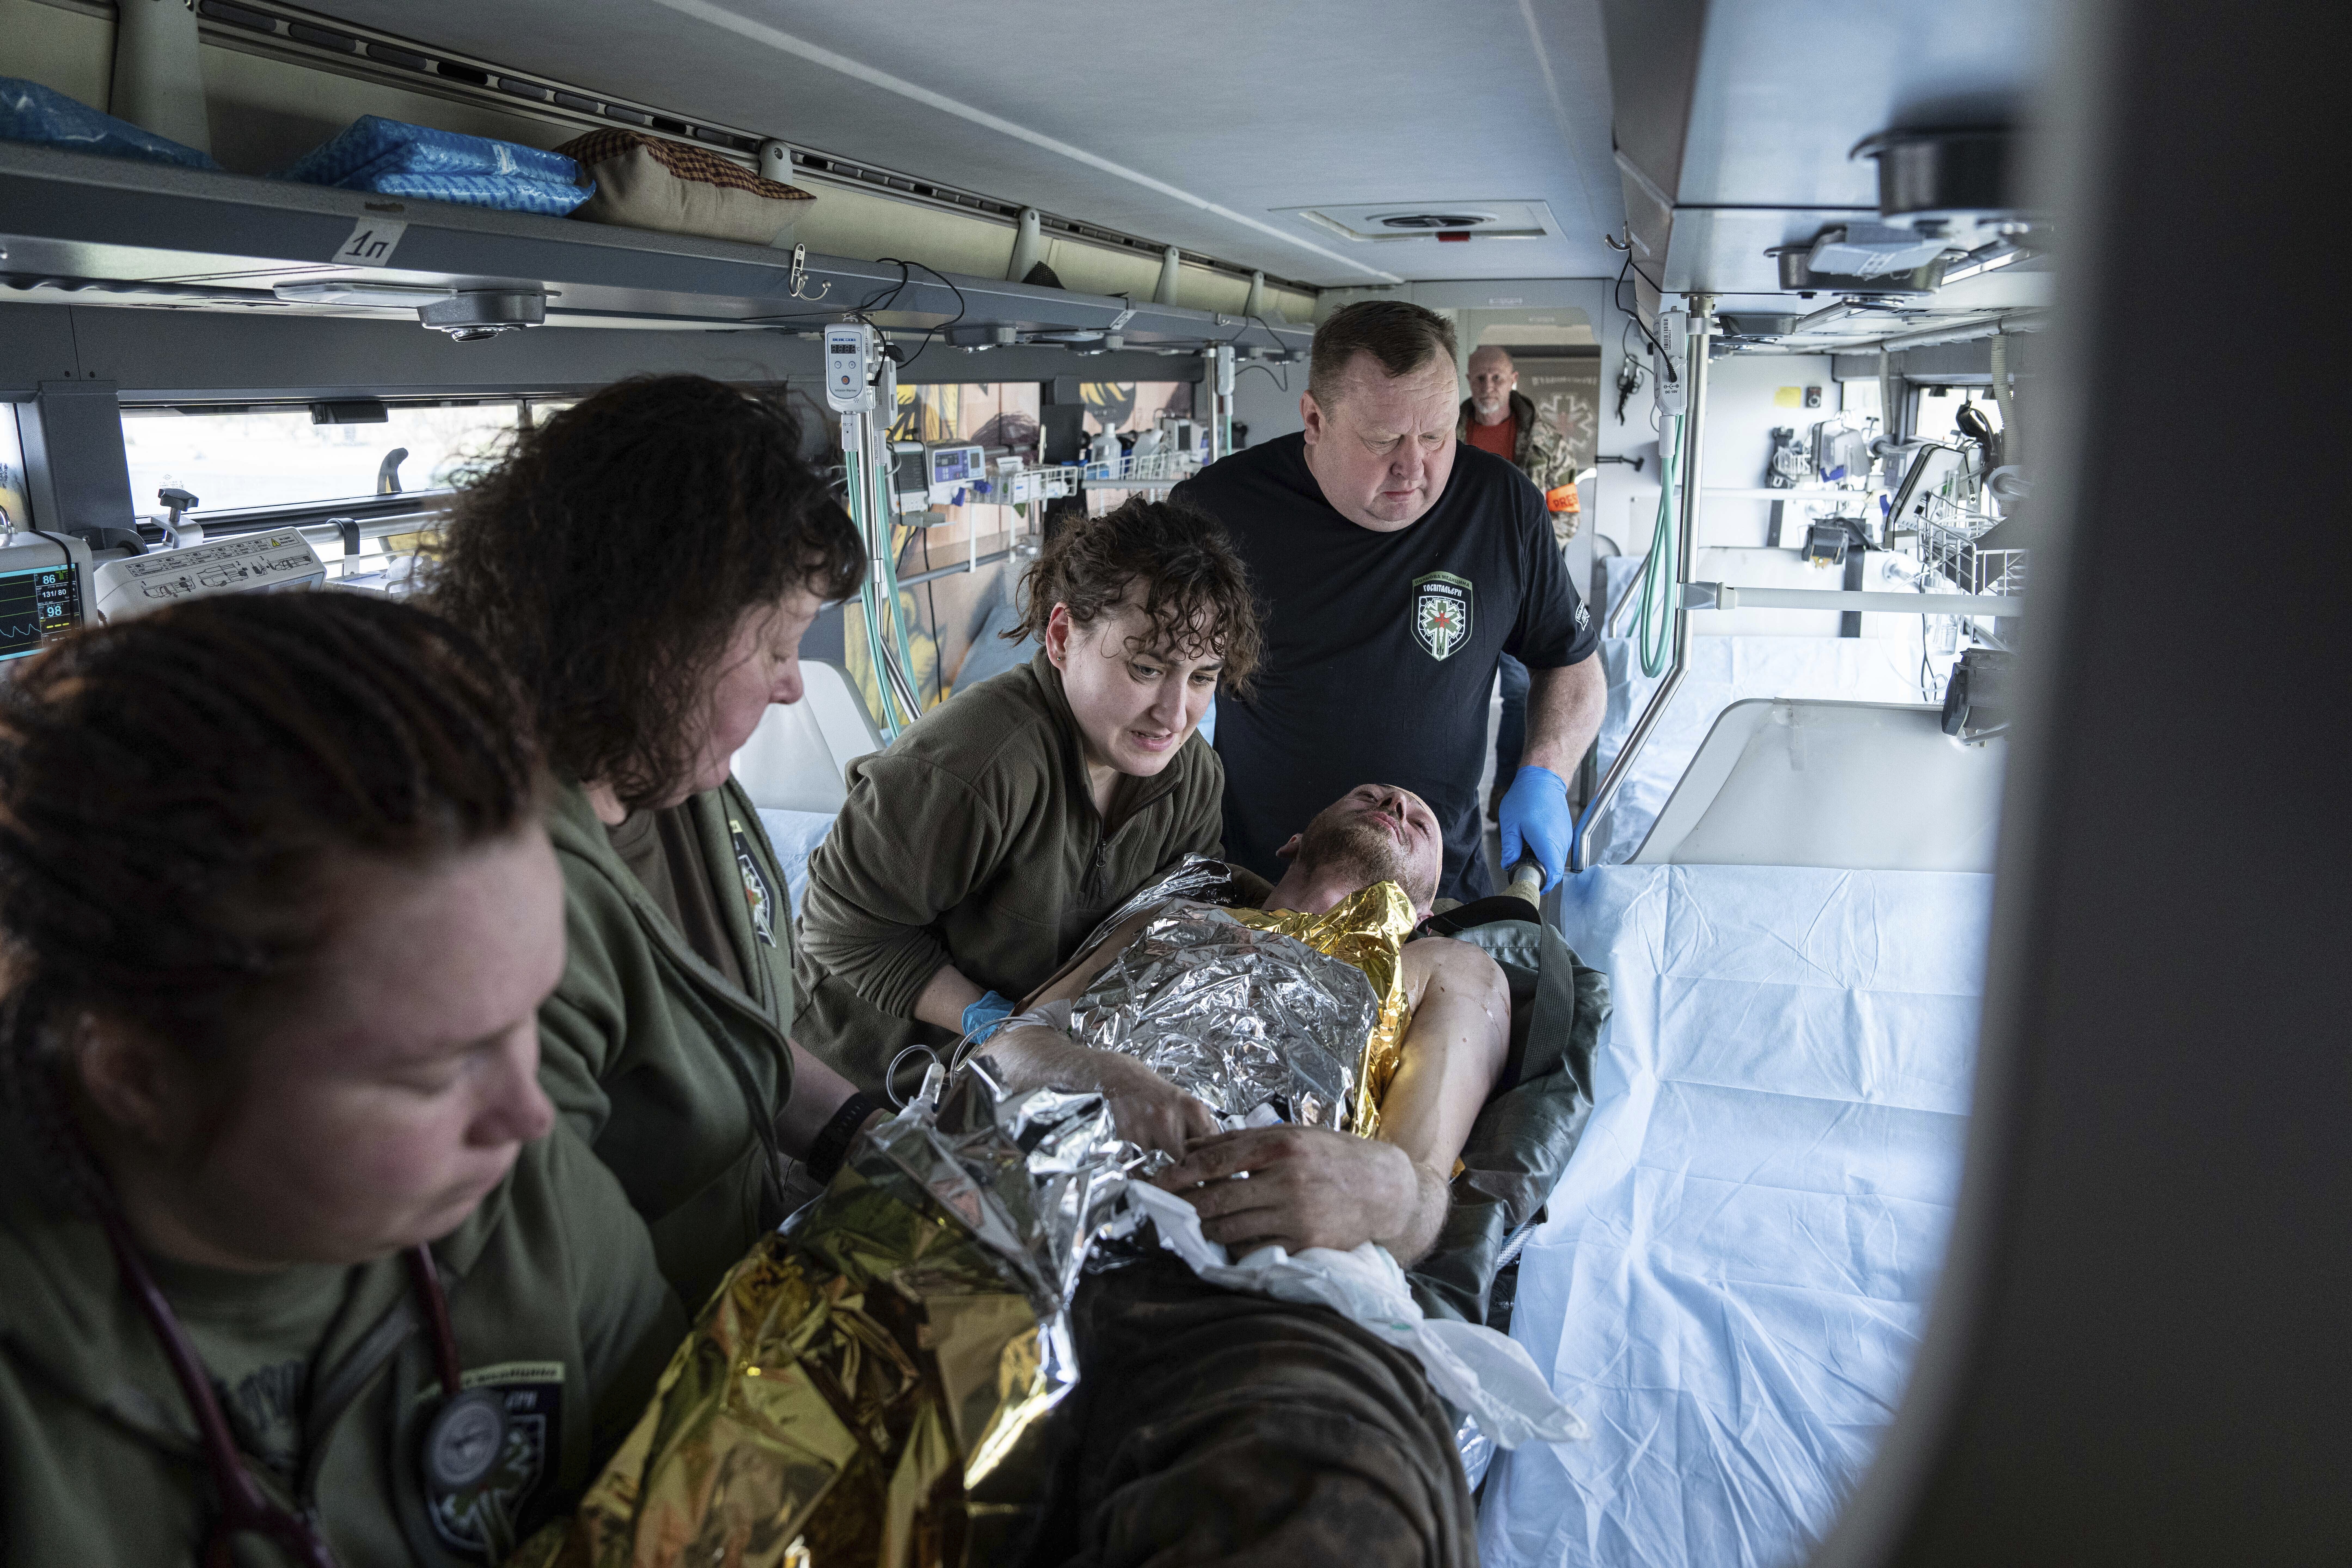 Voluntarios de la organización paramédica Hospitallers mueven a un soldado ucraniano en un autobús medicalizado durante una evacuación en la región de Donetsk, Ucrania, el miércoles 22 de marzo de 2023. (AP Foto/Evgeniy Maloletka)